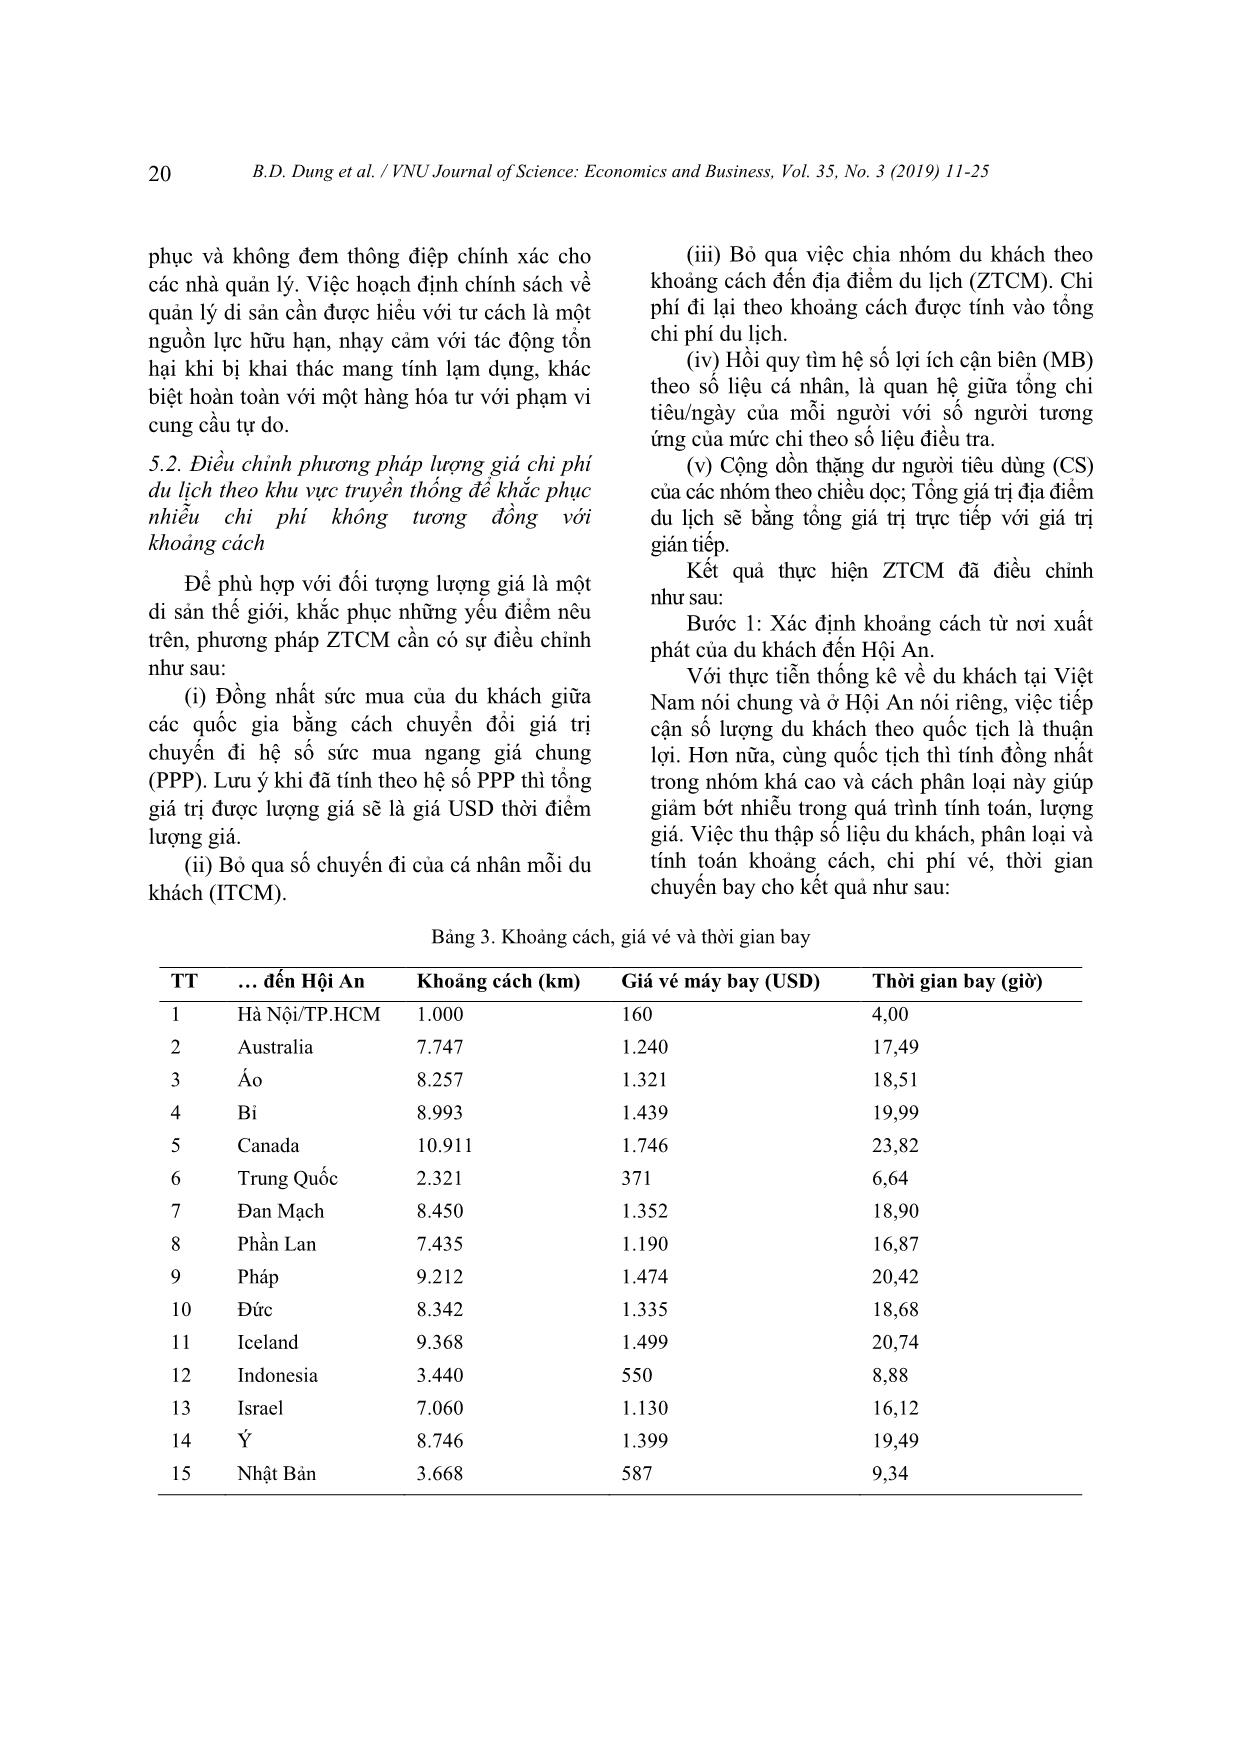 Lượng giá di sản với cách tiếp cận xây dựng đường cầu hàng hóa công: Áp dụng ban đầu phương pháp lượng giá chi phí du lịch theo khu vực tại Hội An, Việt Nam trang 10